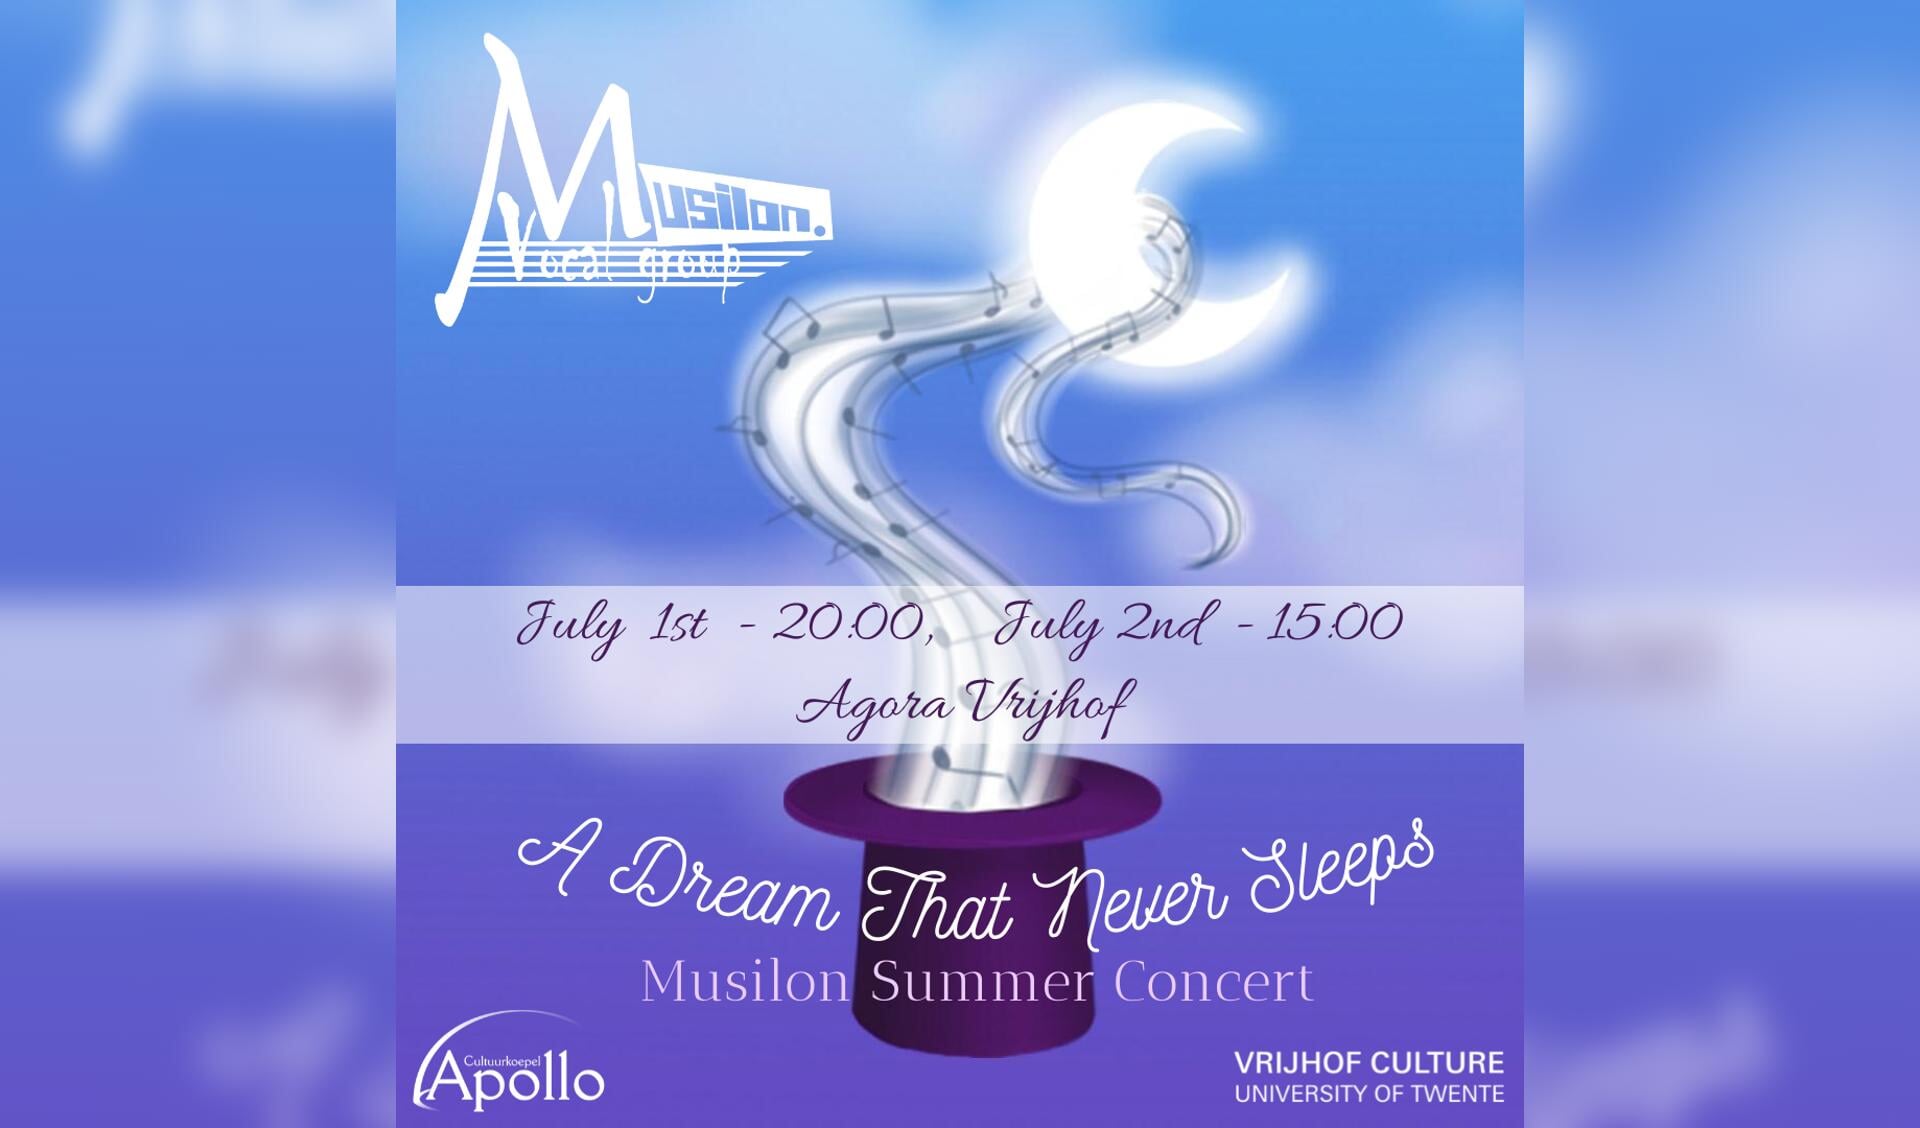 1 en 2 juli, Musilon Summer concert. A dream that never sleeps